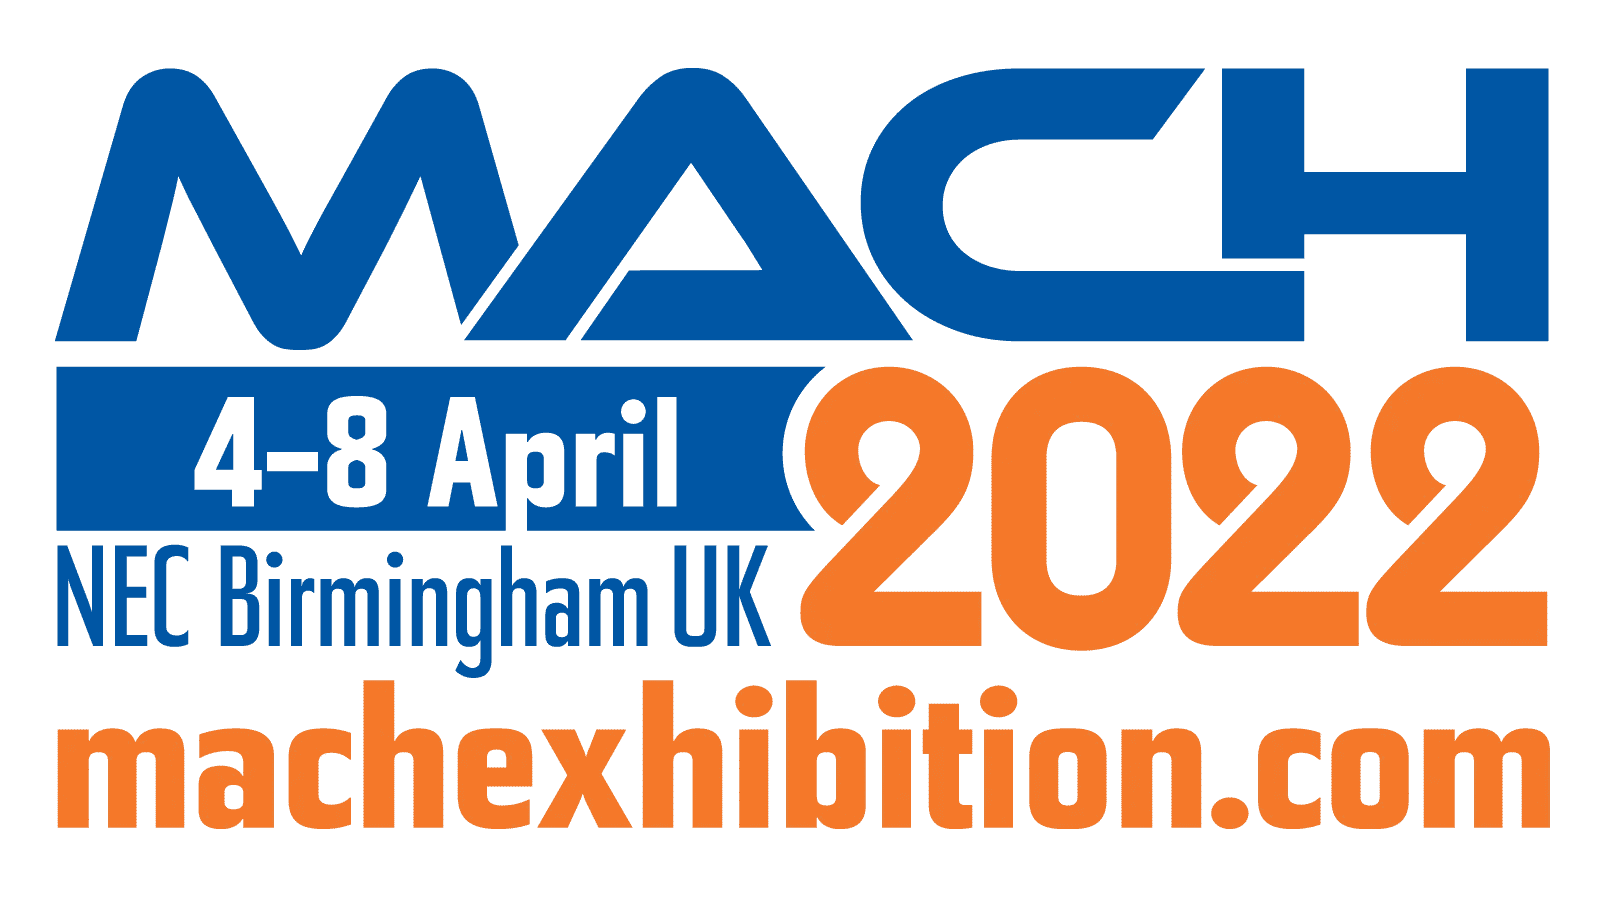 MACH 2022 Exhibition logo